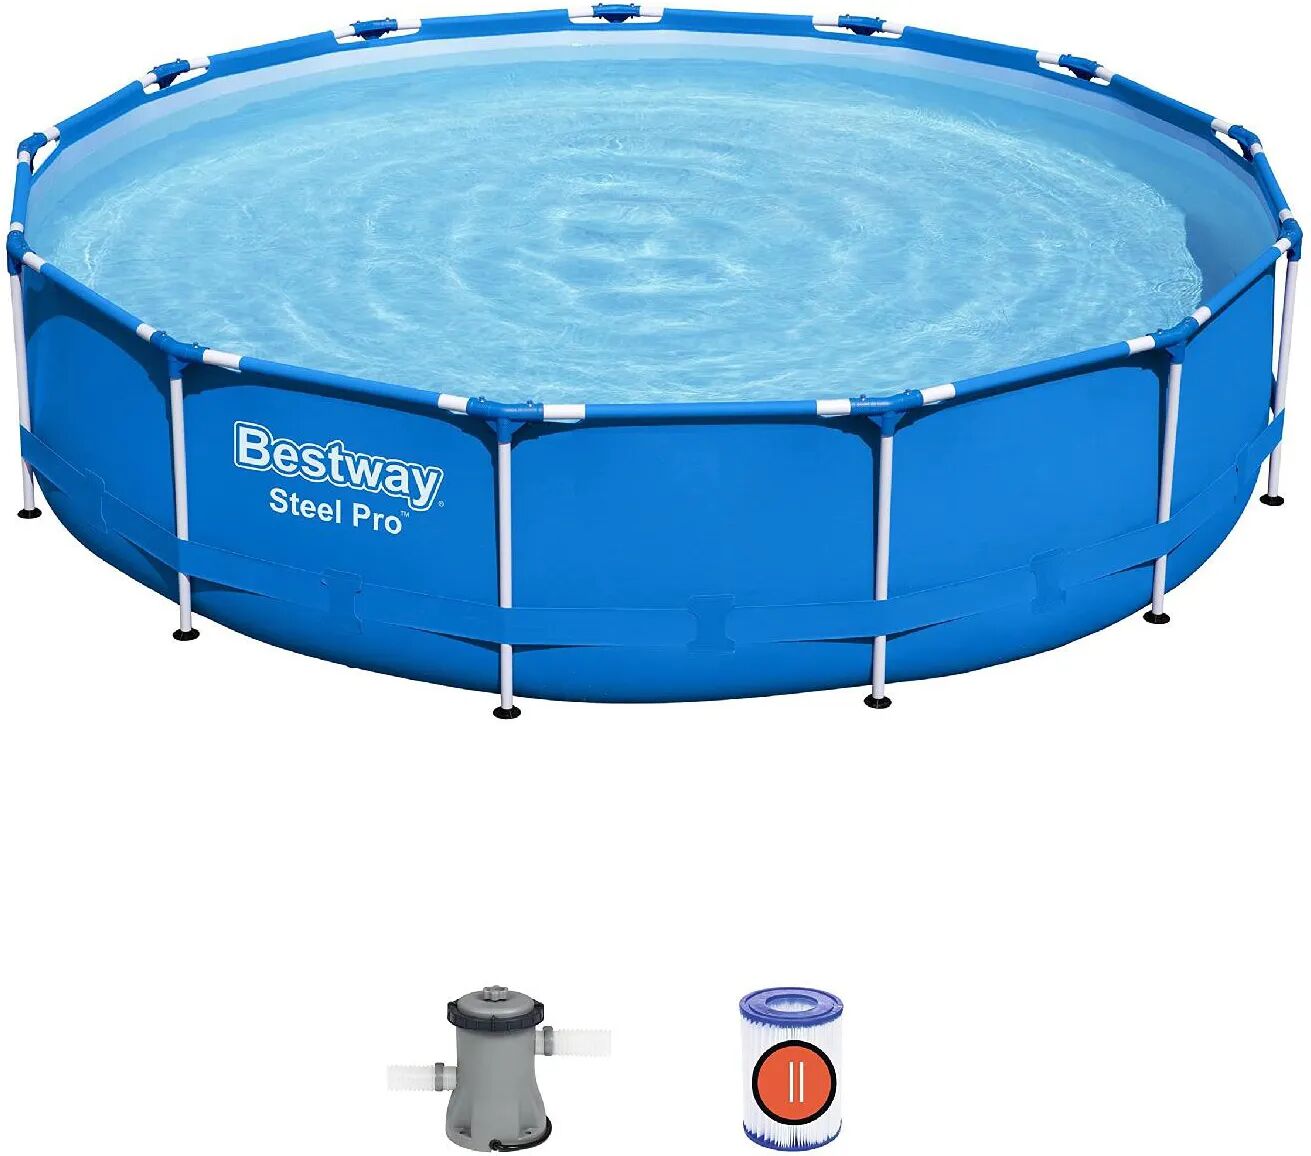 bestway piscina fuori terra con telaio portante piscina esterna da giardino in duraplus rotonda Ø 396x84h cm con pompa filtro da 2.006l/h - 5612e steel pro